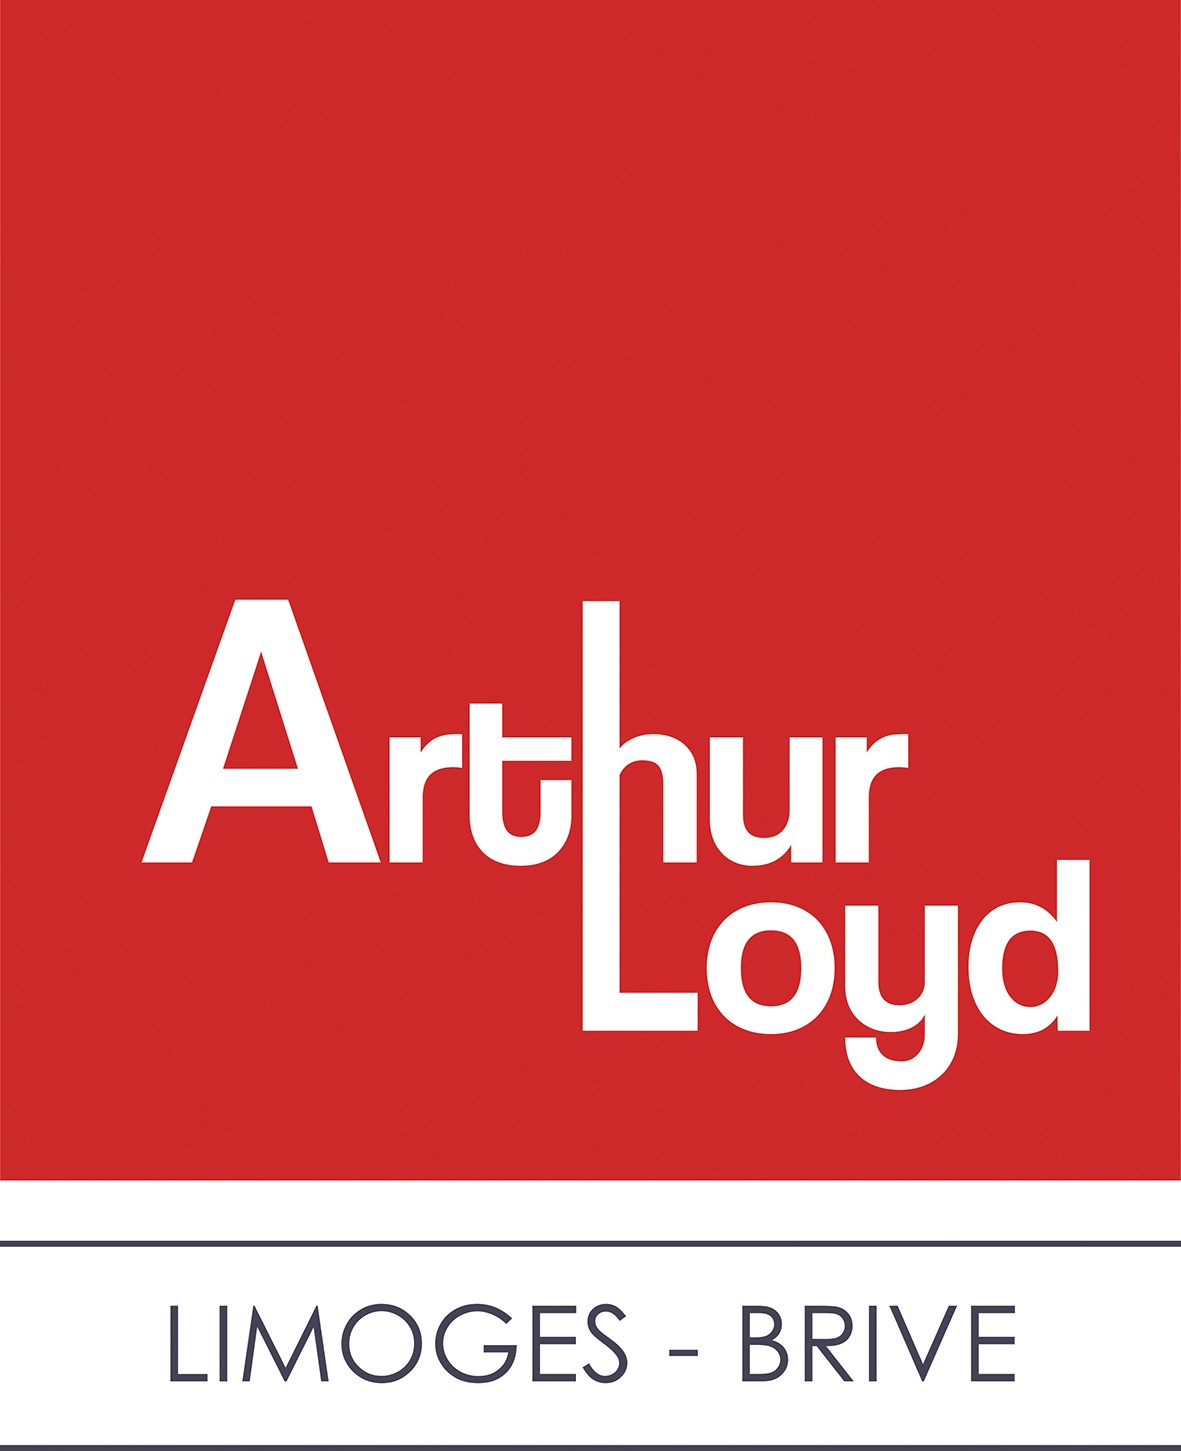 Exclusivité Arthur Loyd Limoges !!! Bâtiment d'activité de 700 m² à louer en ZIN de Limoges